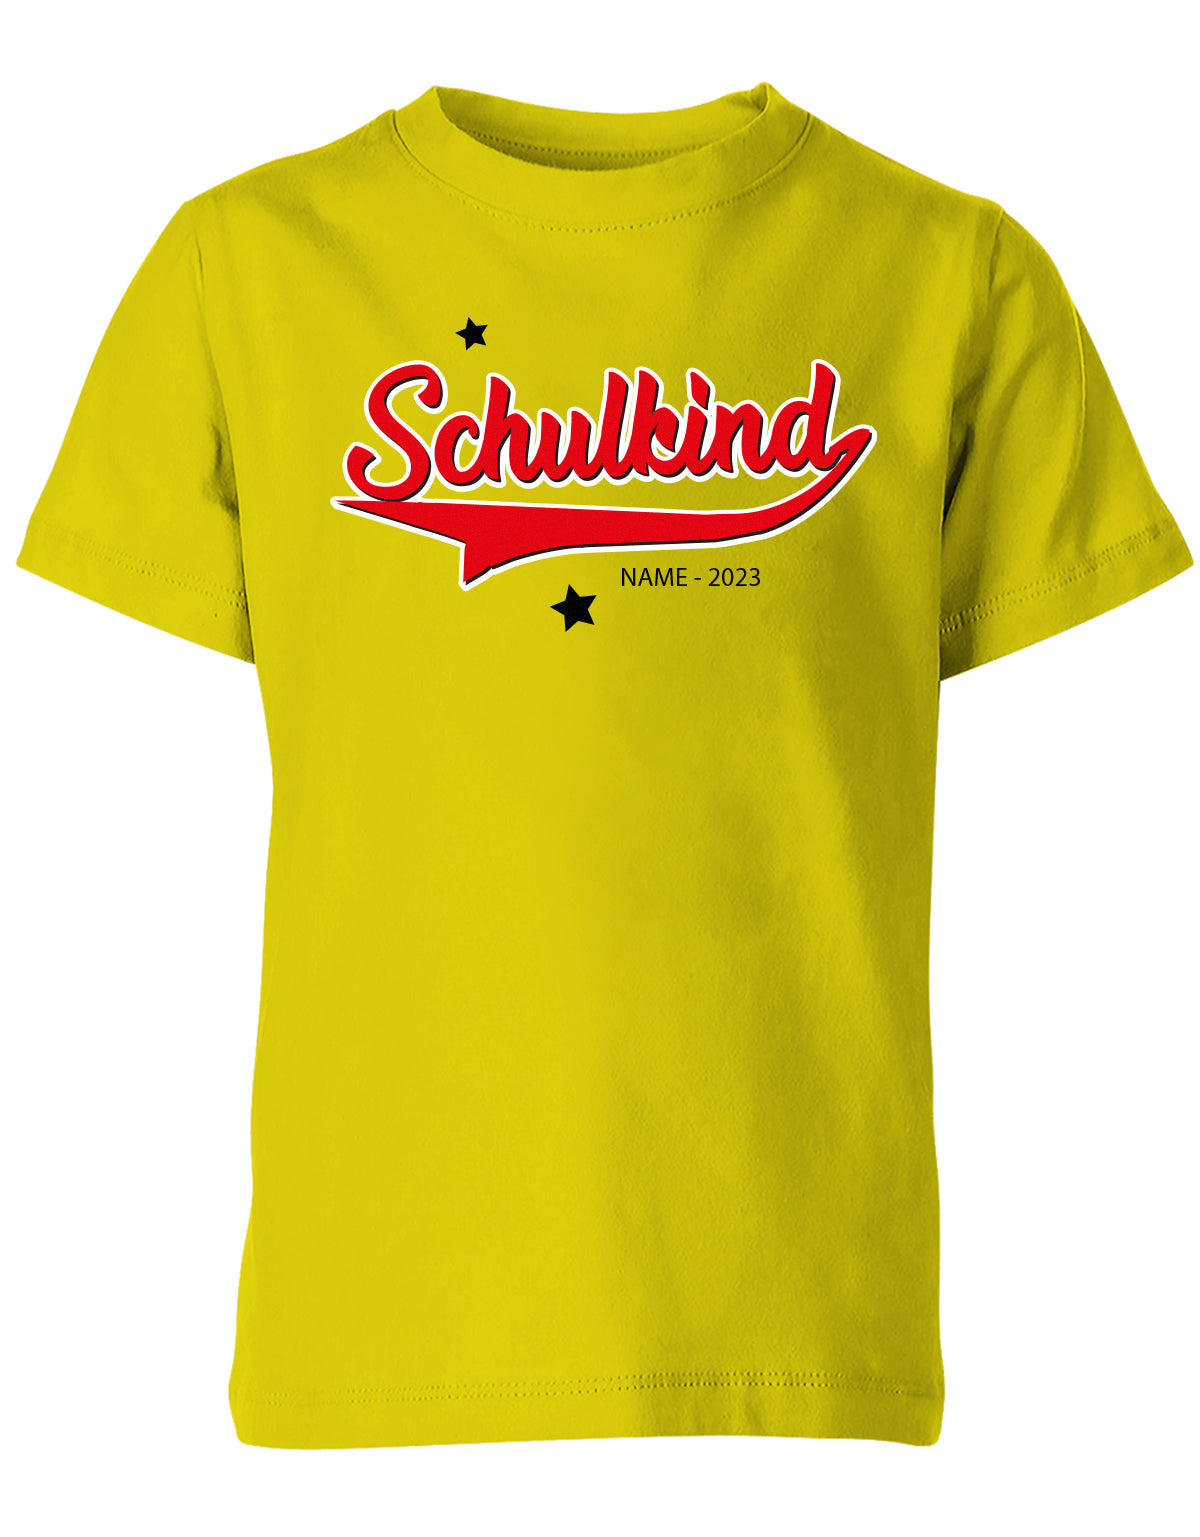 Schulkind 2023 - Collage Style - Einschulung 1. Klasse - Kinder T-Shirt Gelb